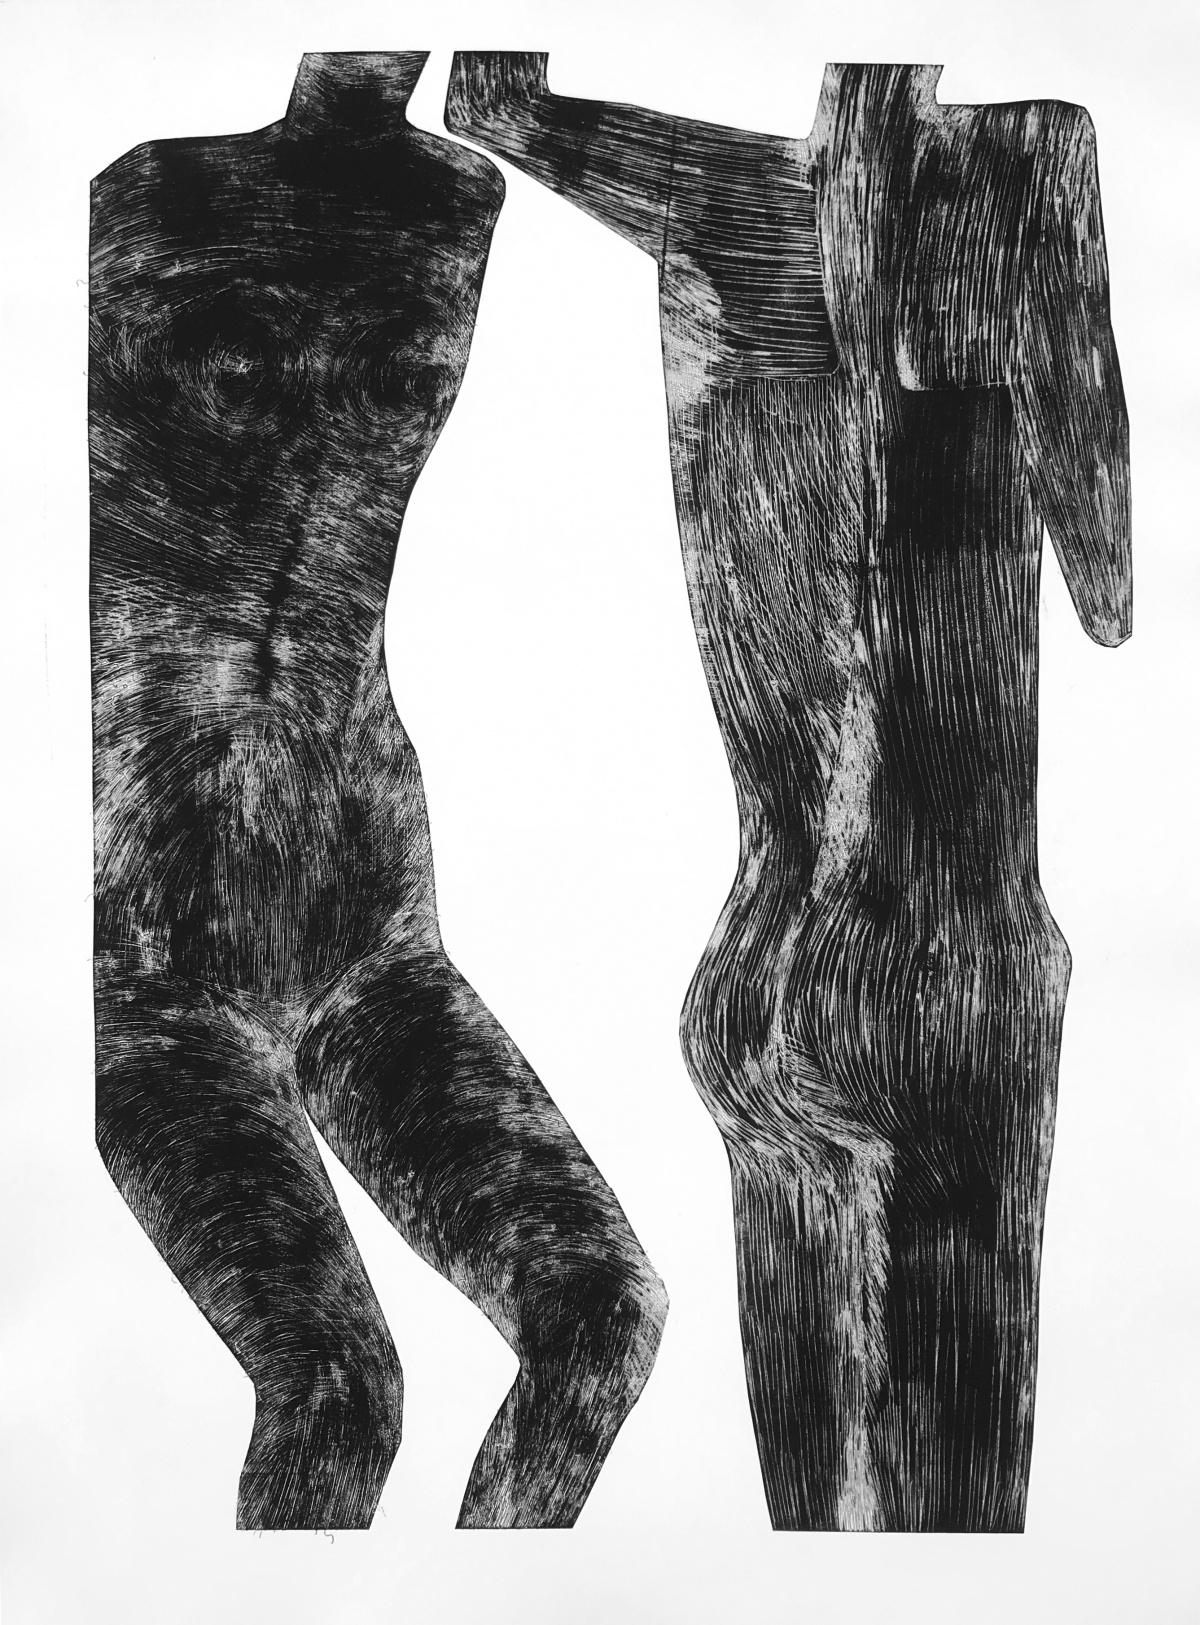 Human 7 - Impression contemporaine, figurative, double, noir et blanc